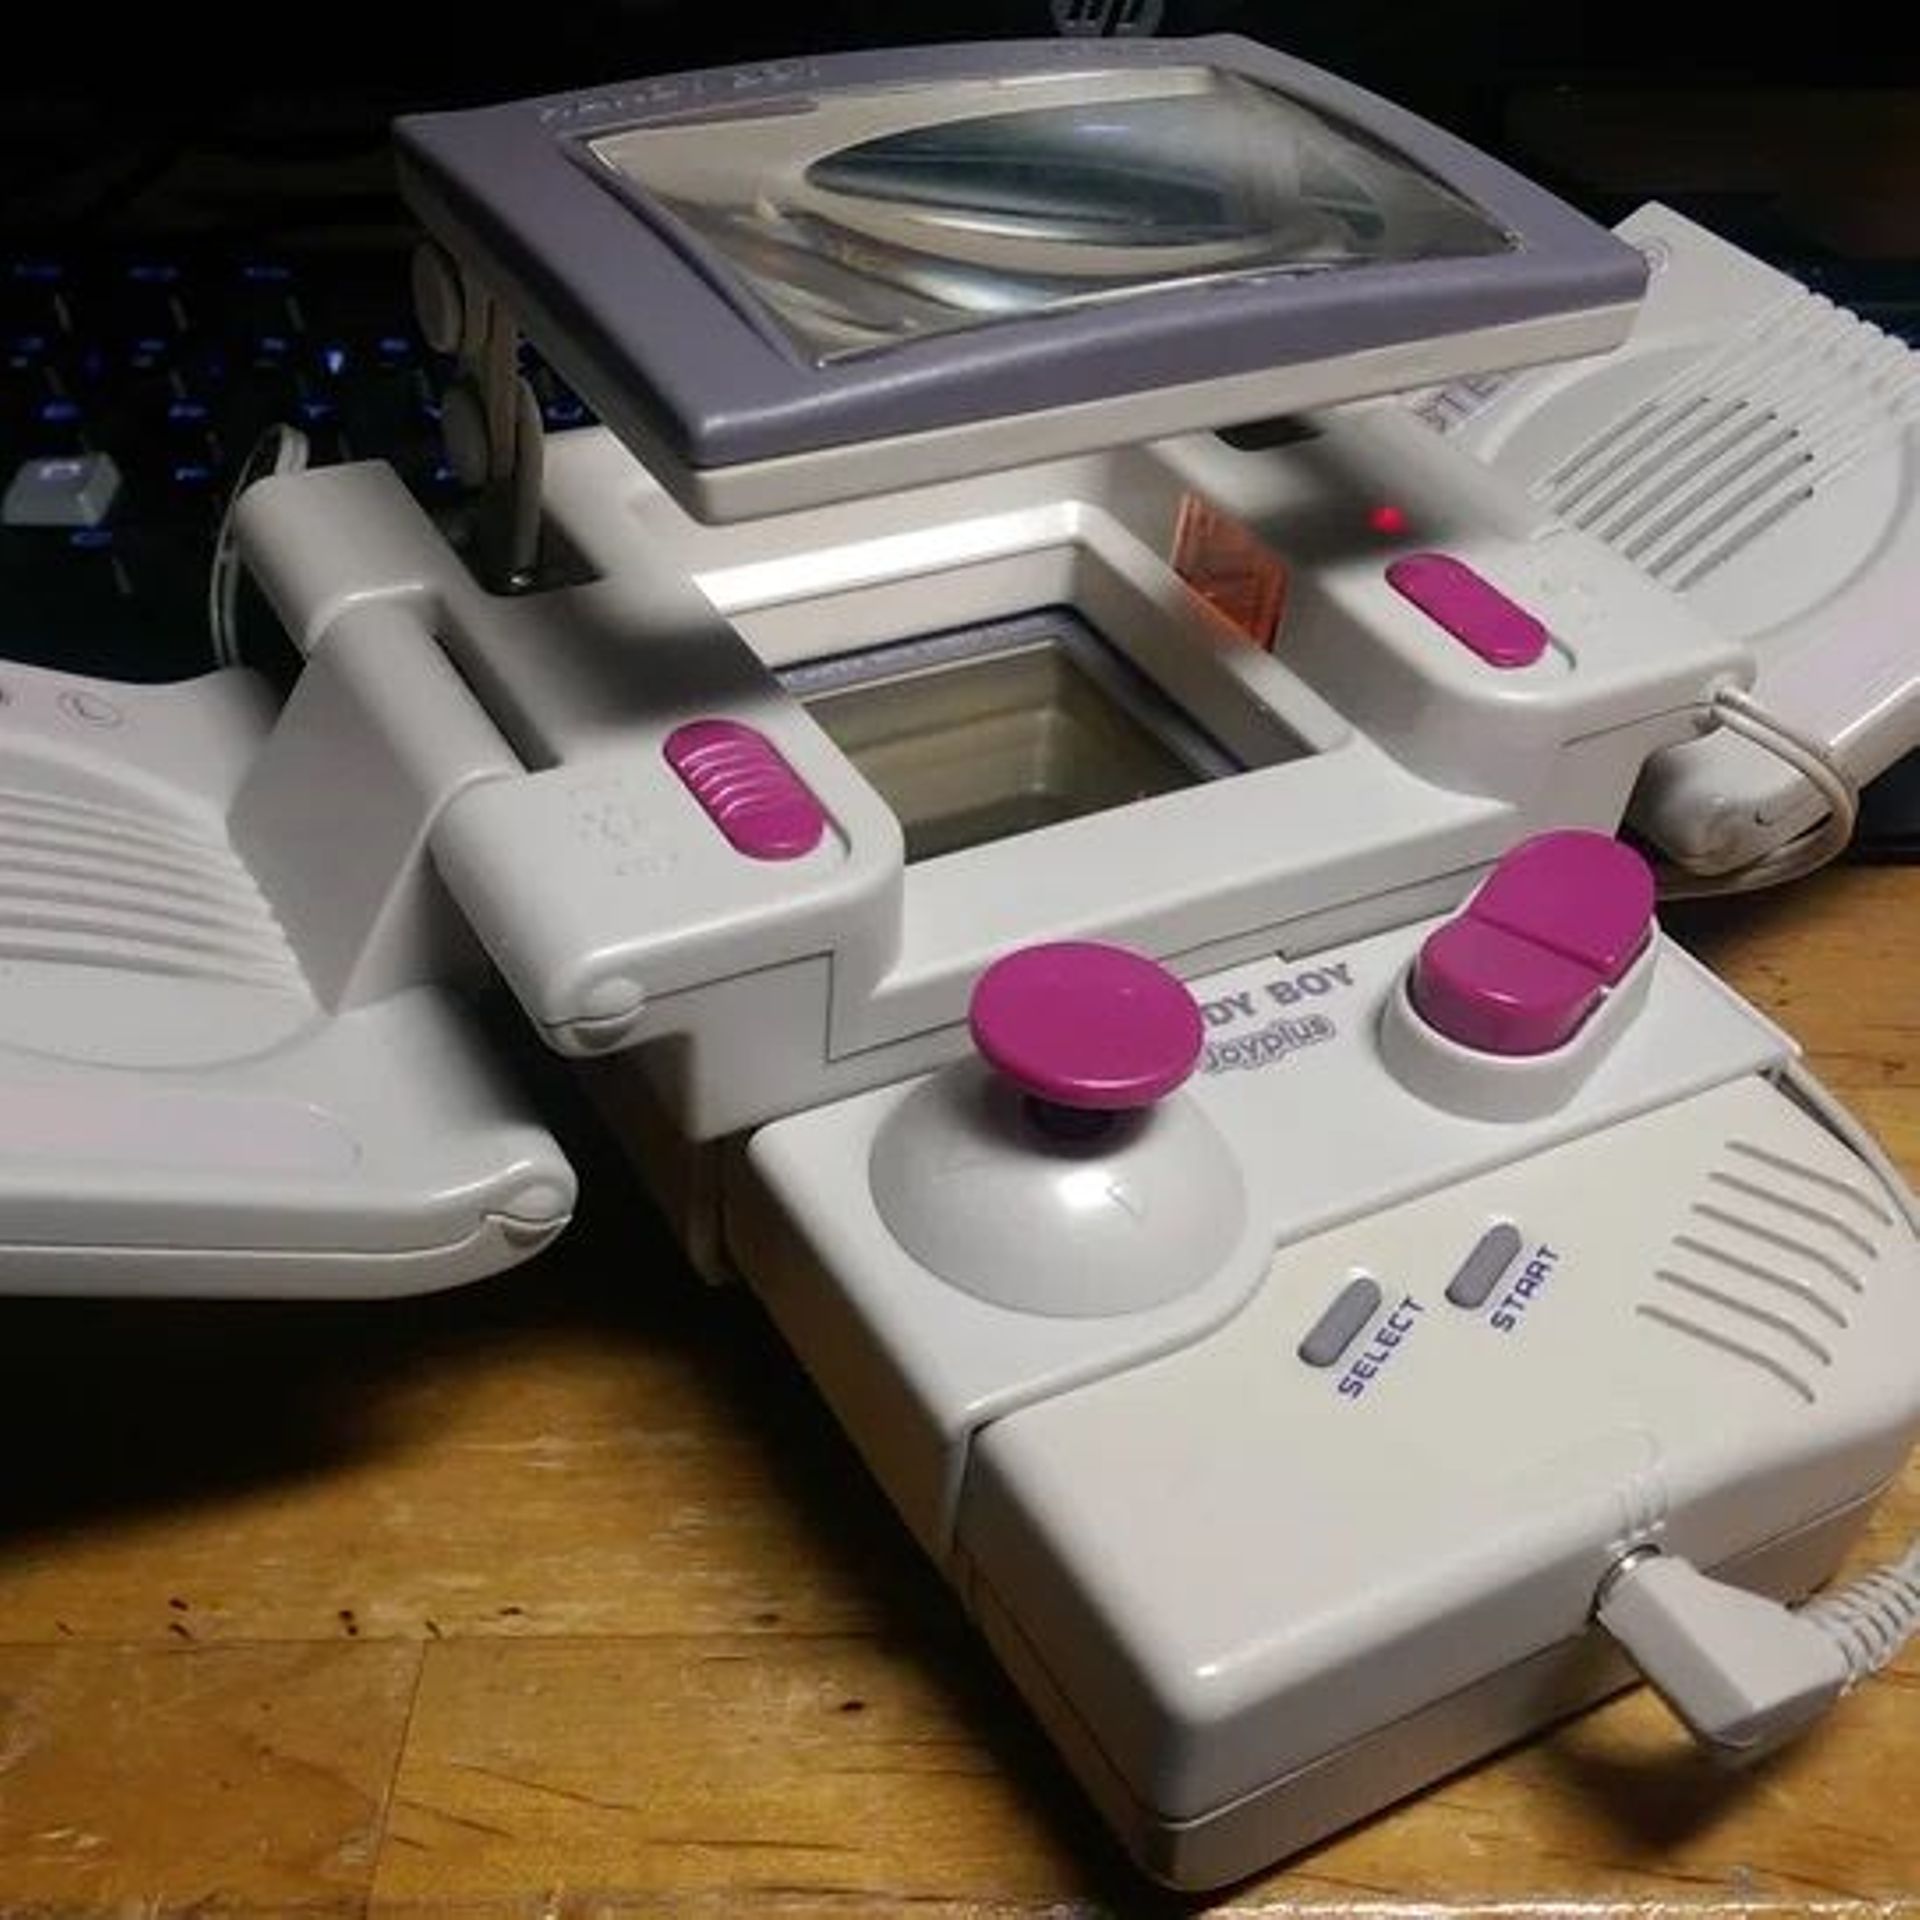 Un nouveau jeu sort sur Game Boy 30 ans après les débuts de la console 